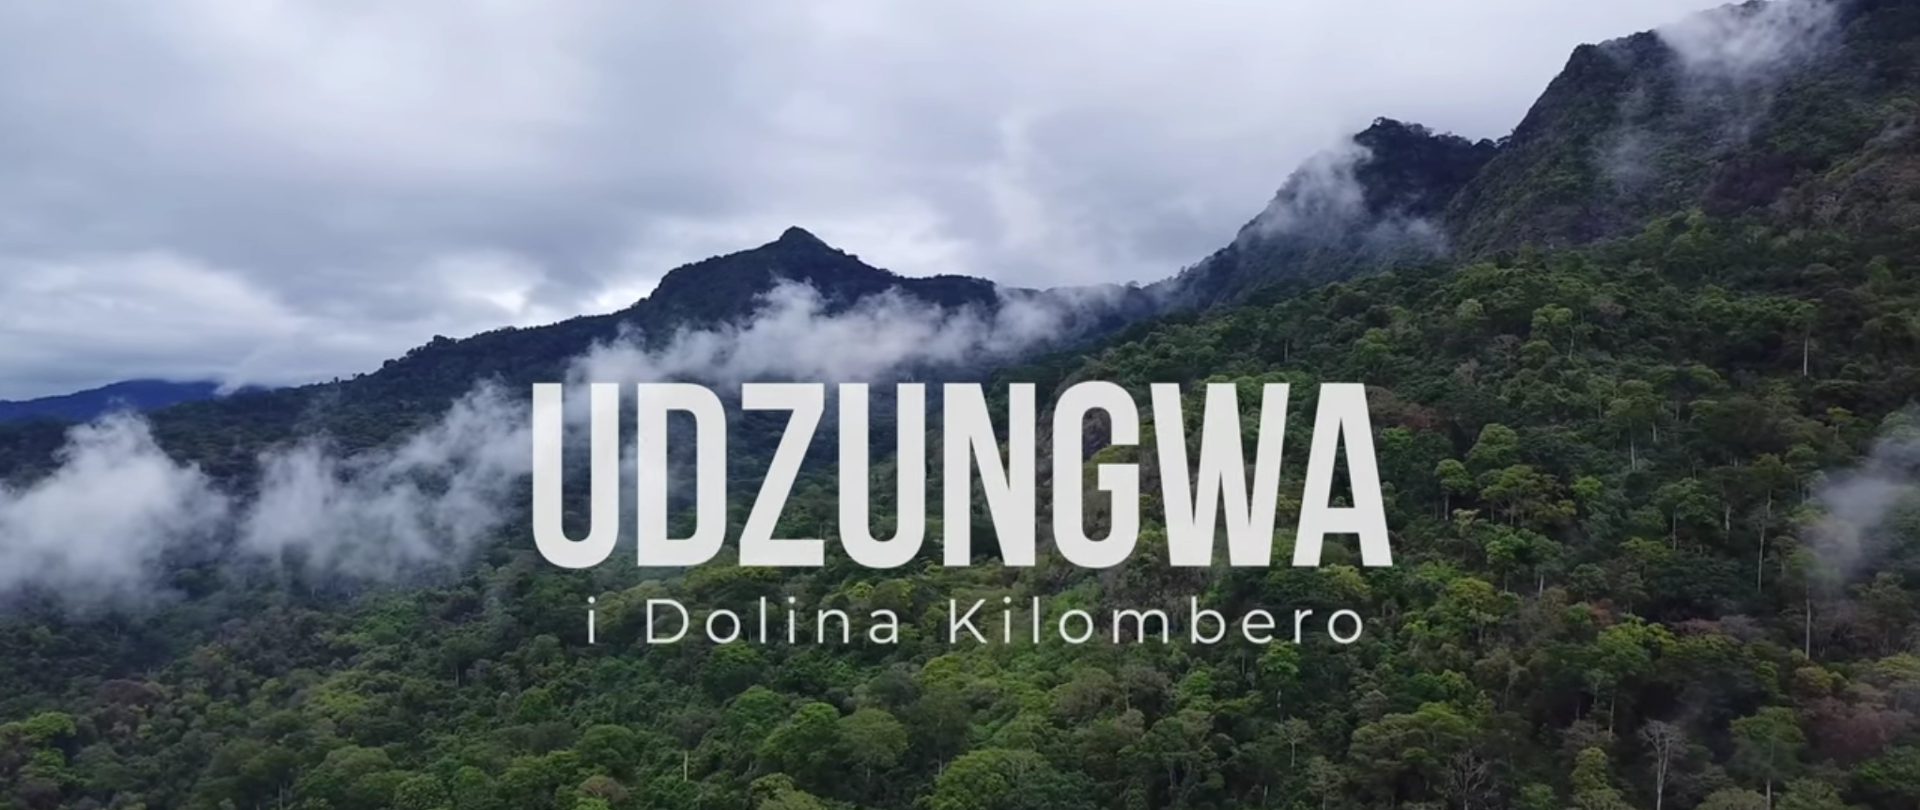 Kadr tytułowy filmu Udzungwa i Dolina Kilombero przedstawiający góry porośnięte lasem tropikalnym